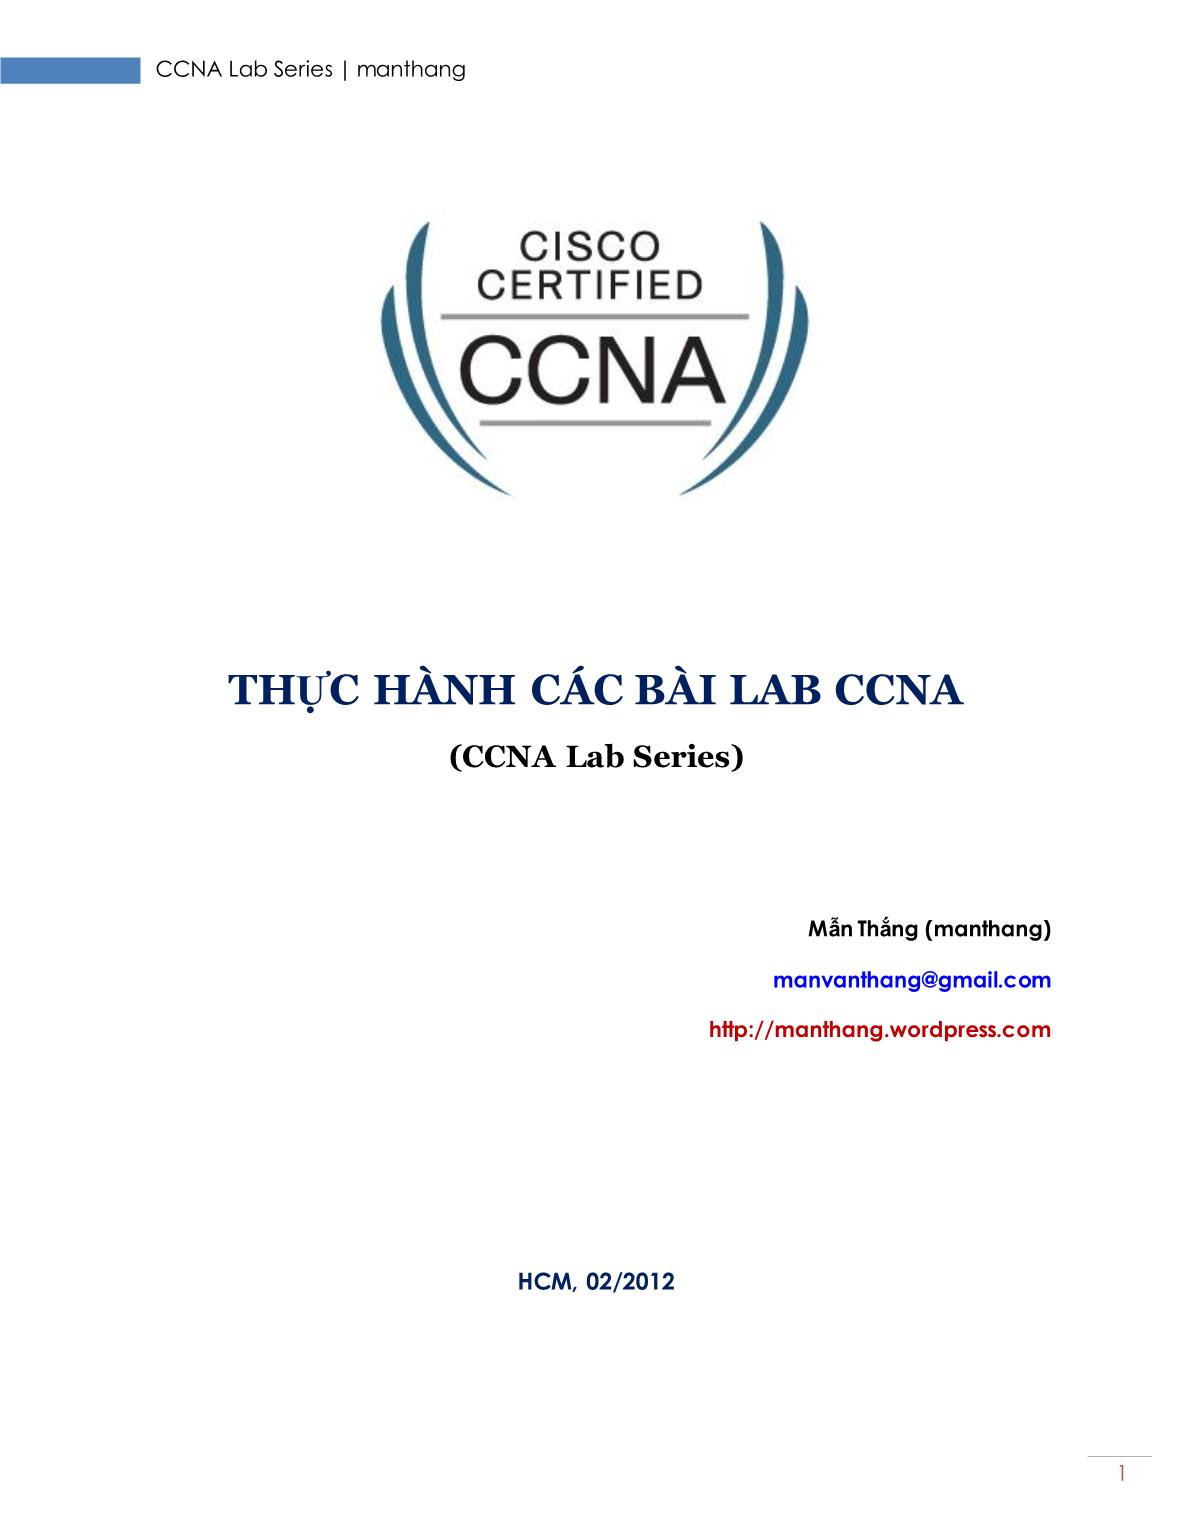 Thực hành các bài Lab CCNA - Mẫn Thắng trang 1